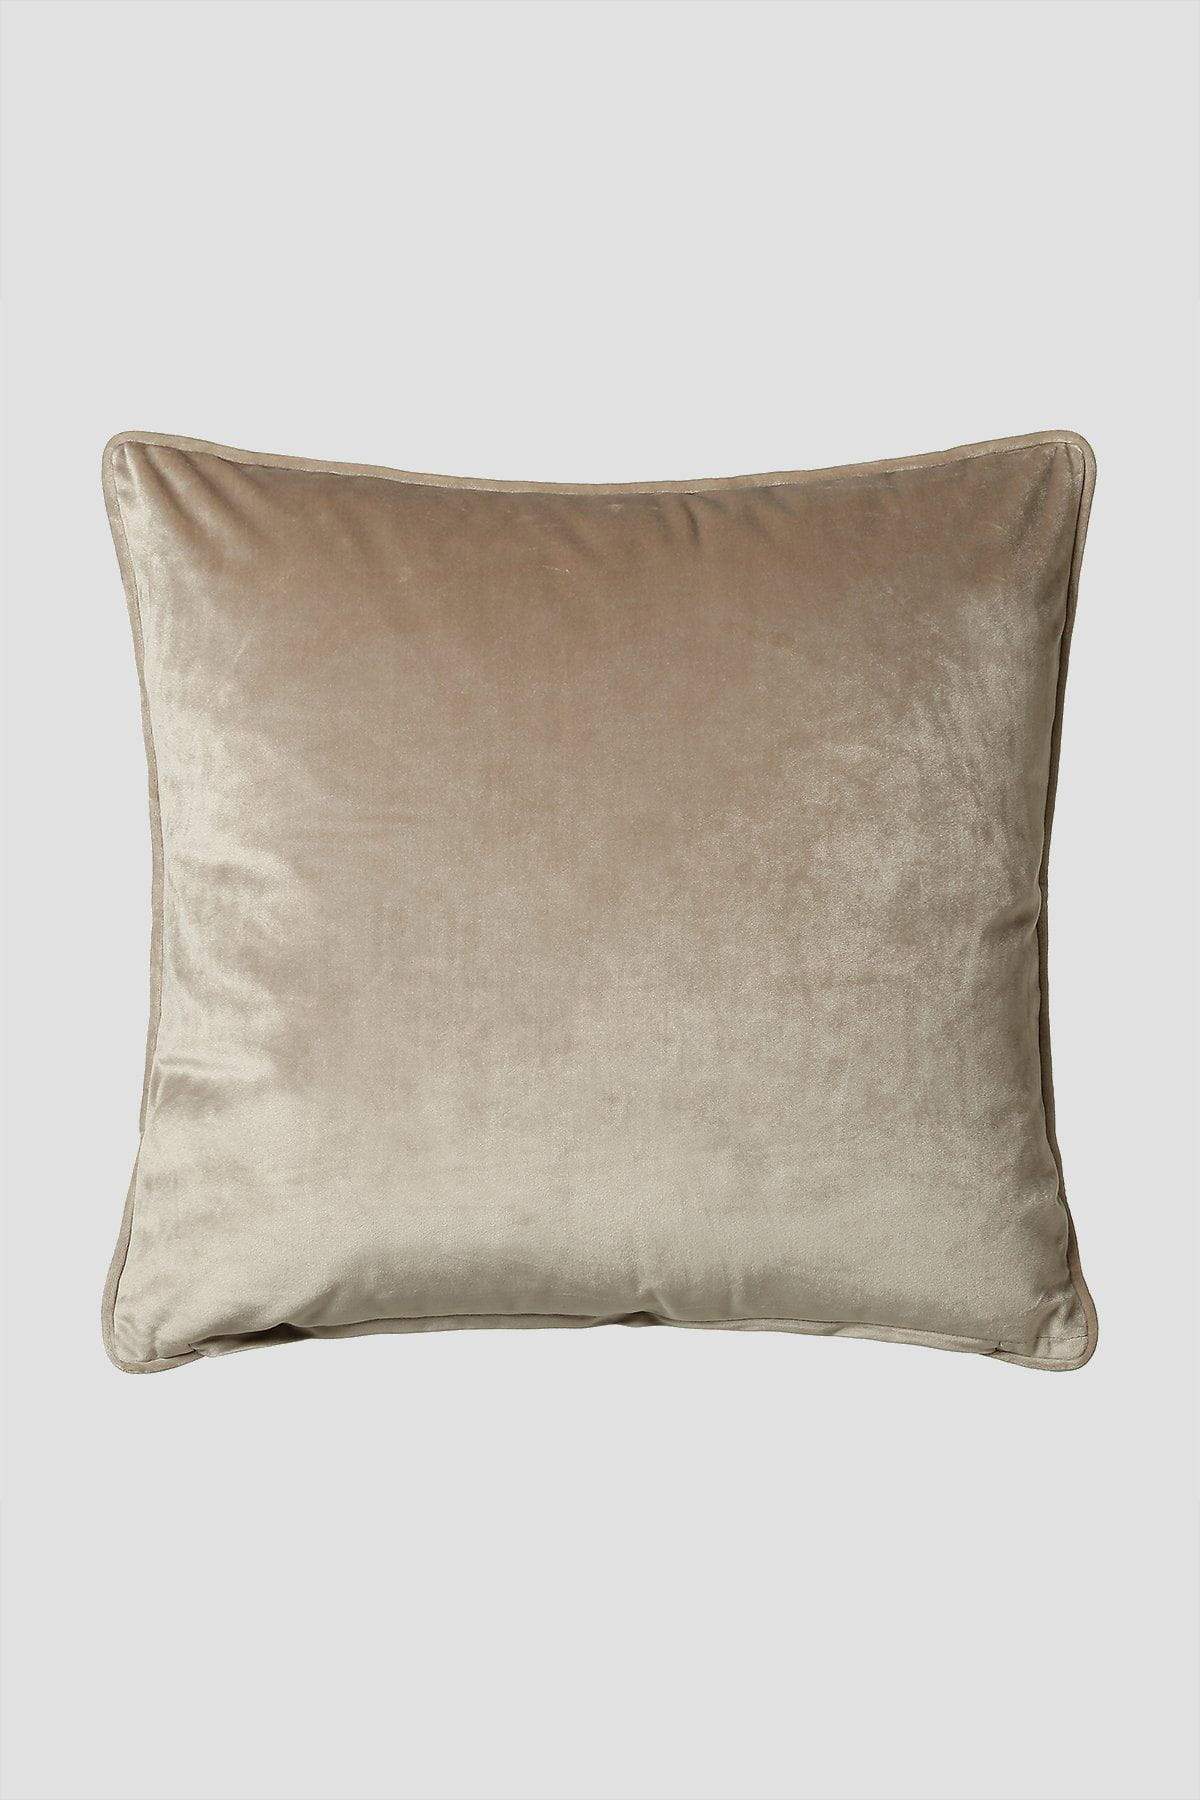 Carraig Donn Bellini 45x45cm Cushion in Taupe